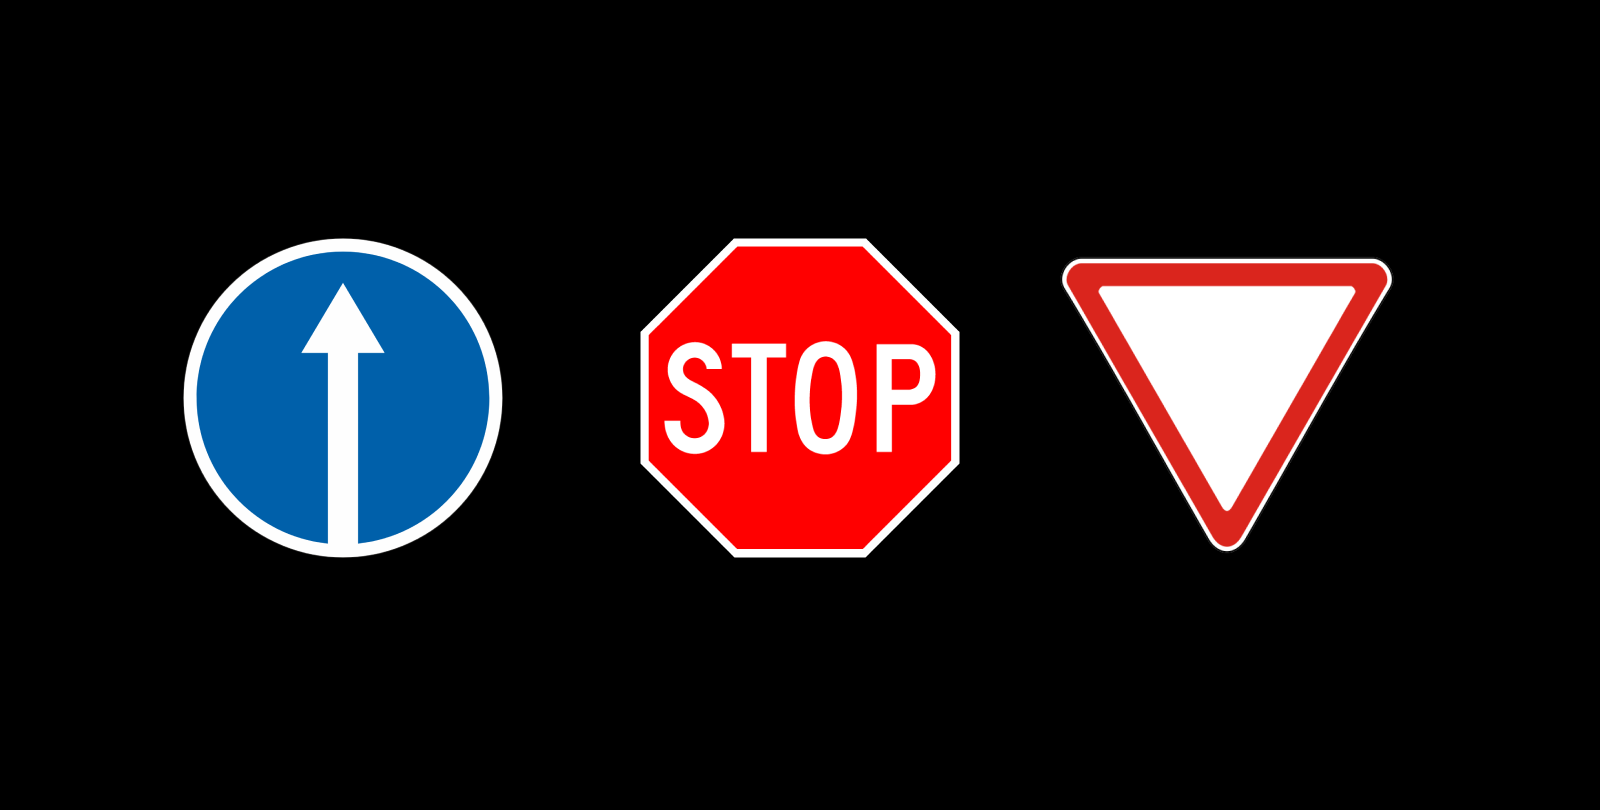 Форма на примере дорожных знаков